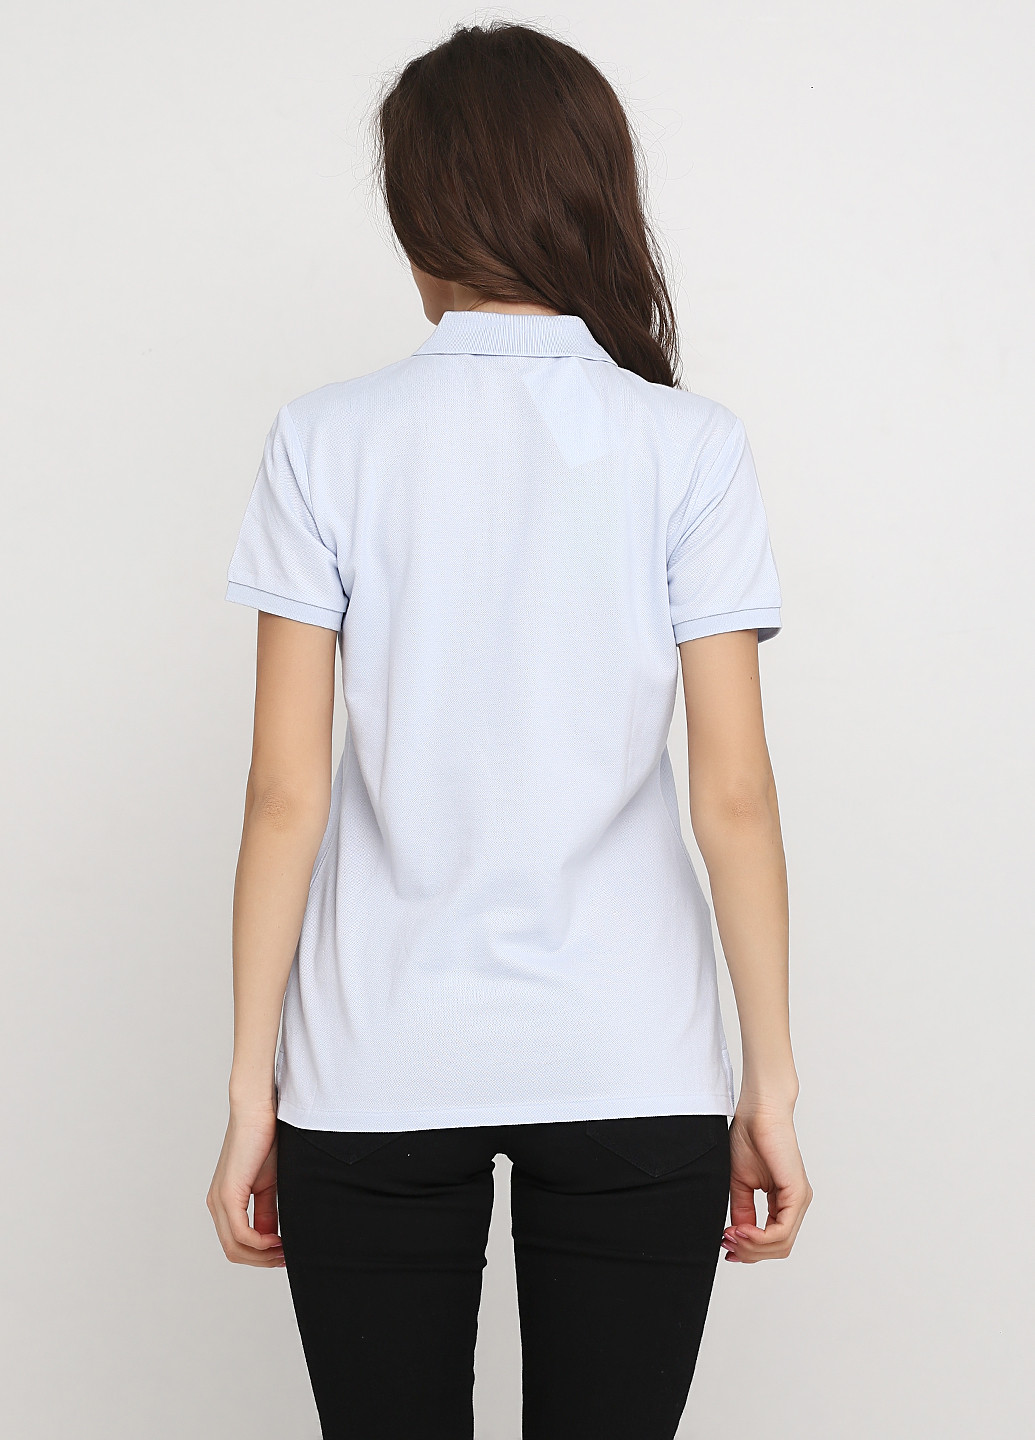 Бледно-голубой женская футболка-поло Ralph Lauren однотонная